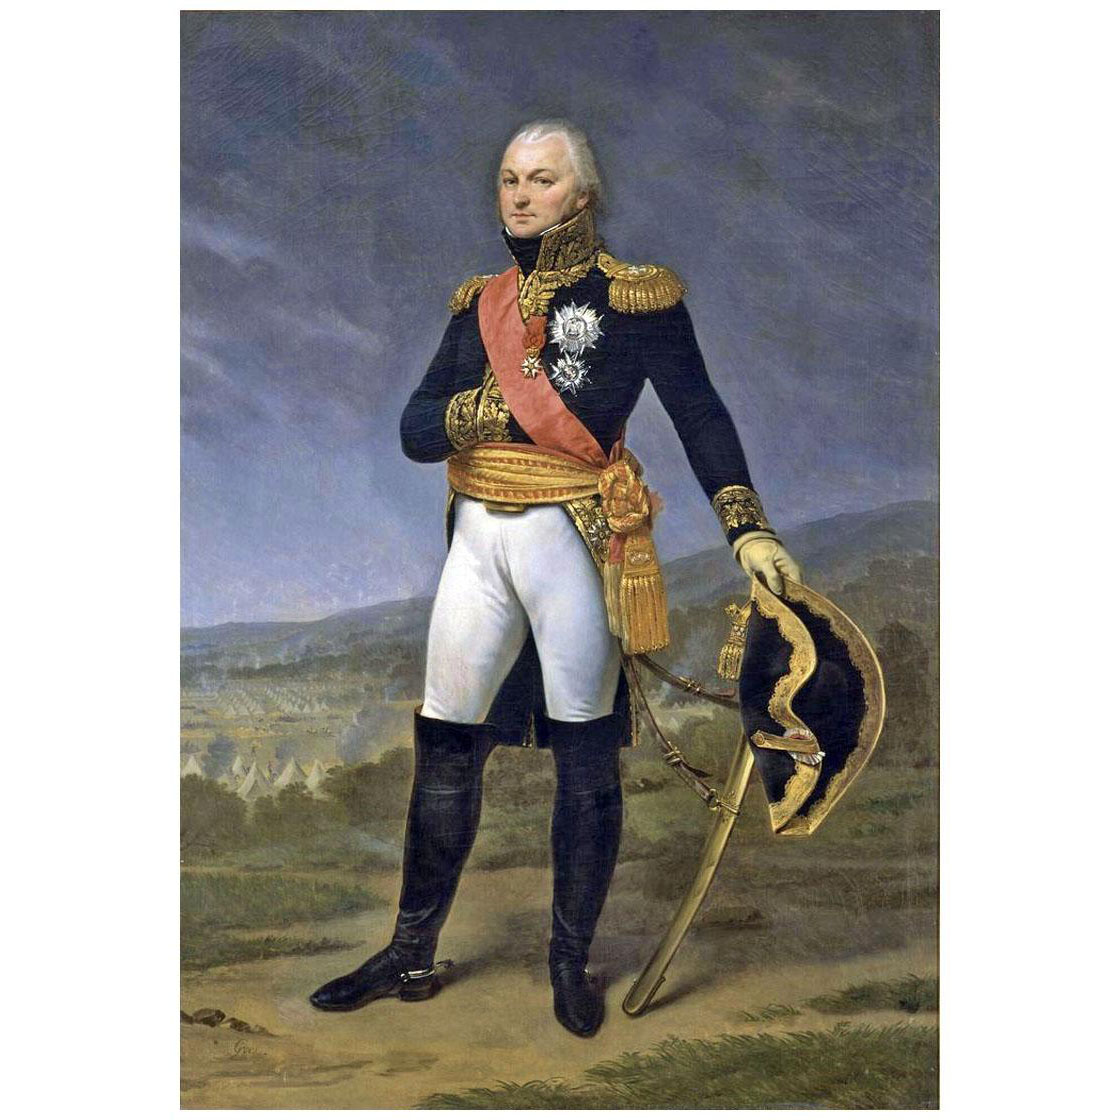 Antoine-Jean Gros. General Claude Legrand. 1810. Chateau de Versailles